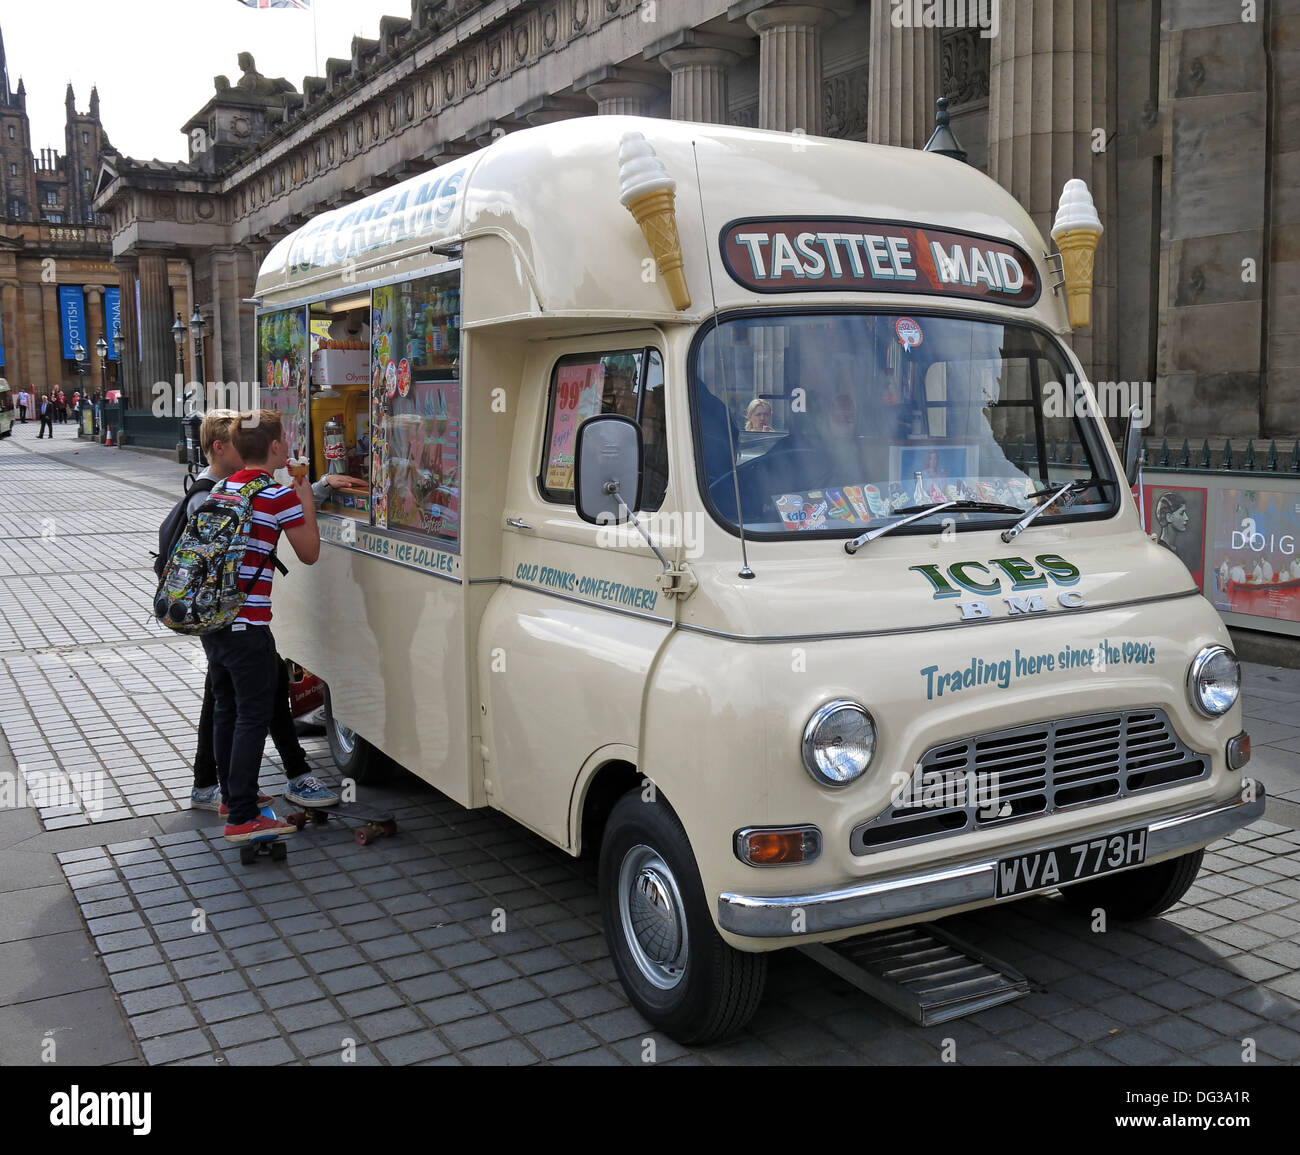 Klassische Creme farbigen Tasttee Maid Eiswagen aus den 1960er Jahren im Stadtzentrum von Edinburgh Schottland UK 2013 Stockfoto